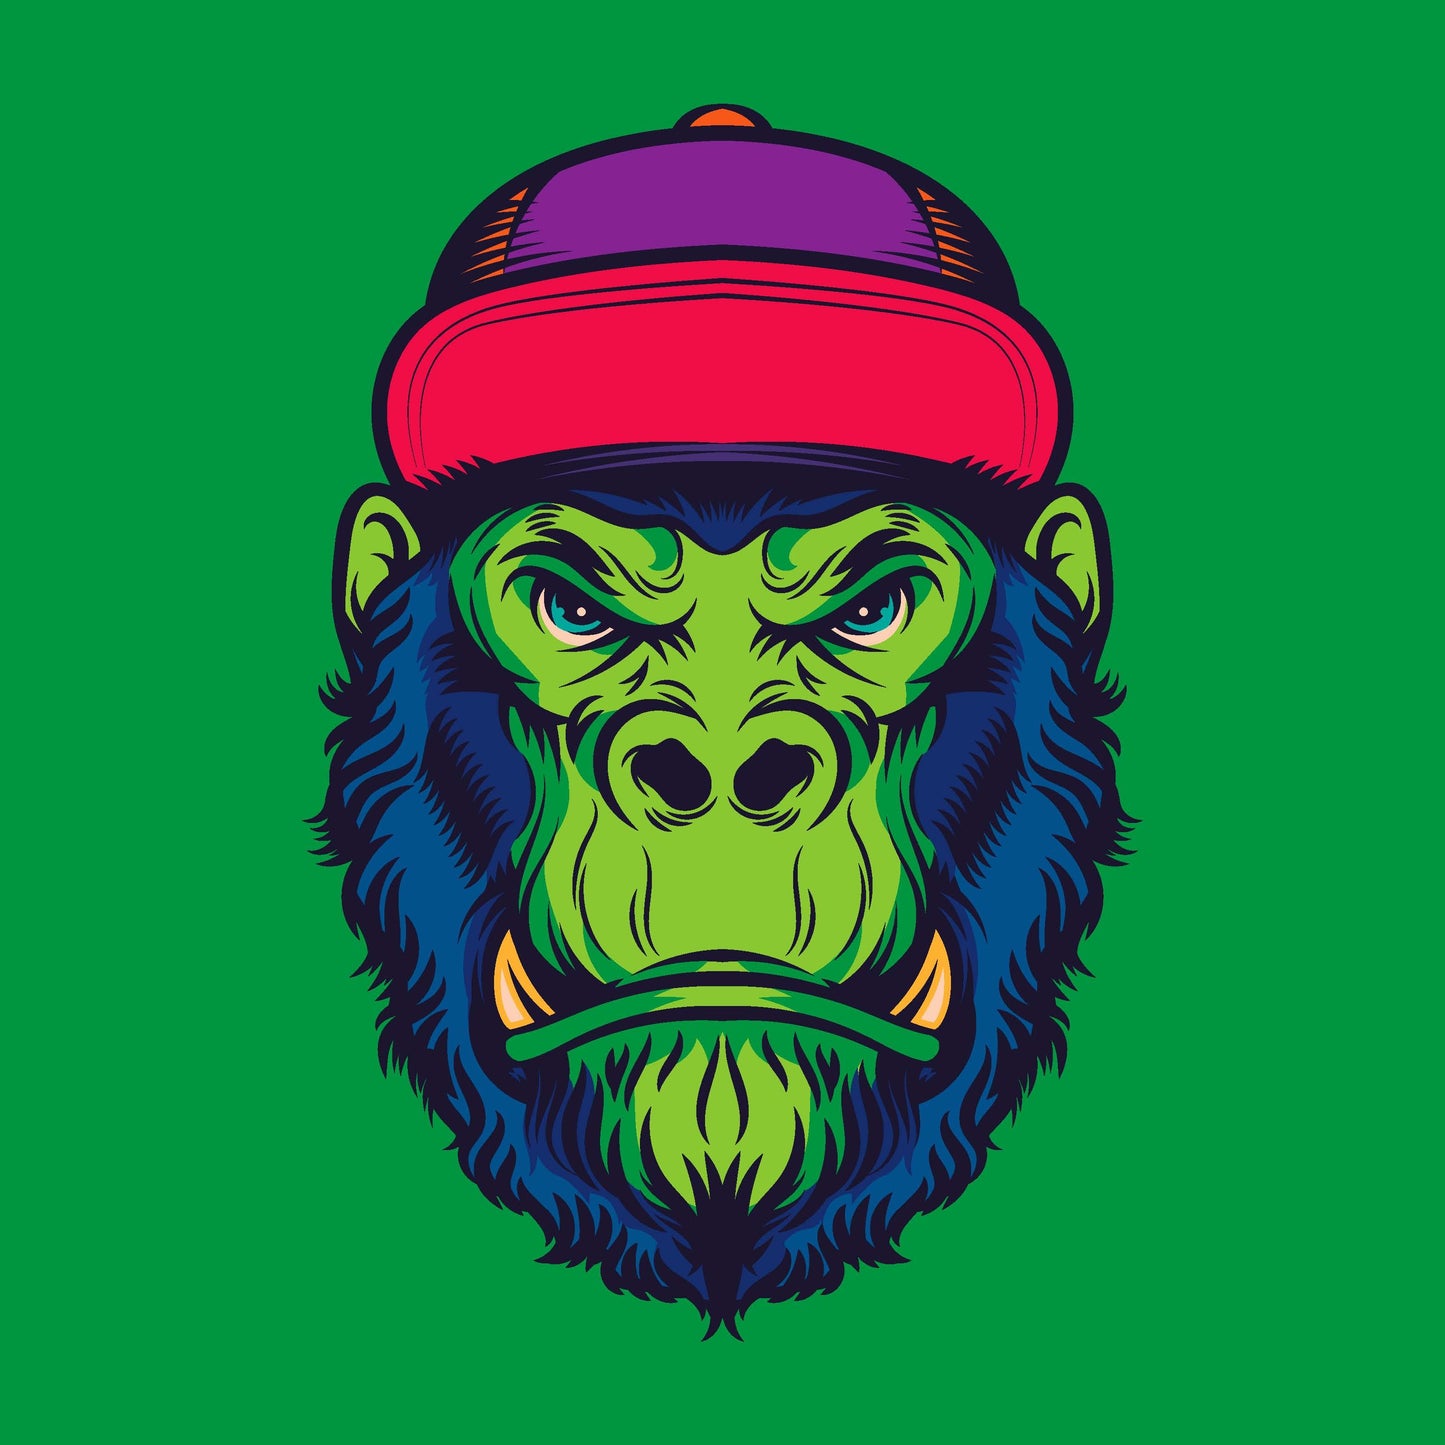 Green Gorilla Face